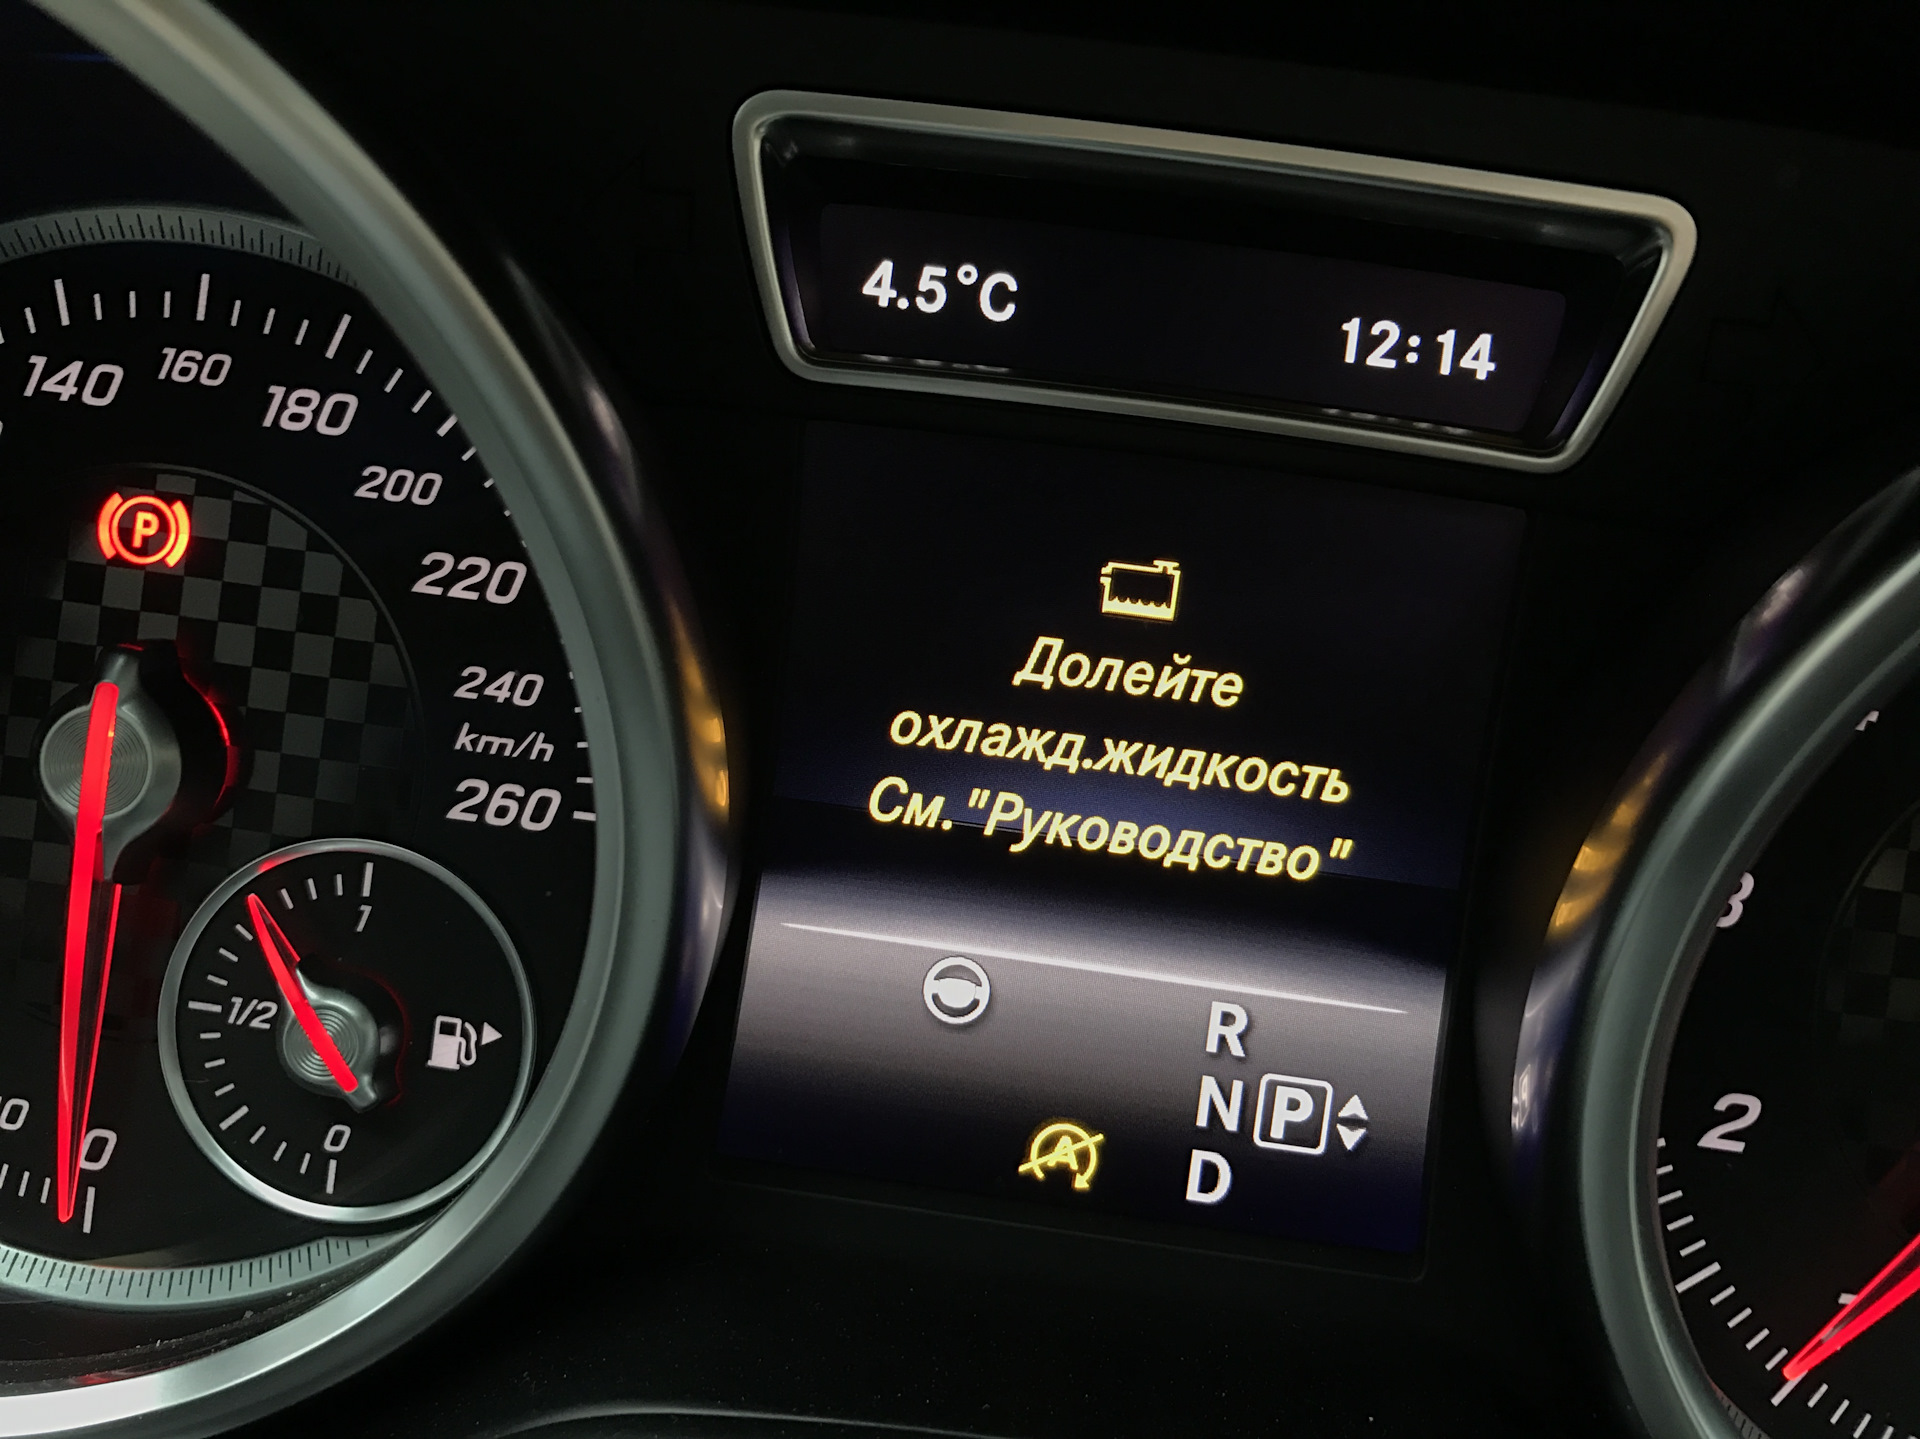 Температура воды в автомобиле. Mercedes-Benz c 200 охлаждающая жидкость. Mercedes Benz gl 350 2016 долейте охлаждающую жидкость. Индикатор уровня охлаждающей жидкости w222. Долейте охлаждающую жидкость Мерседес w204.